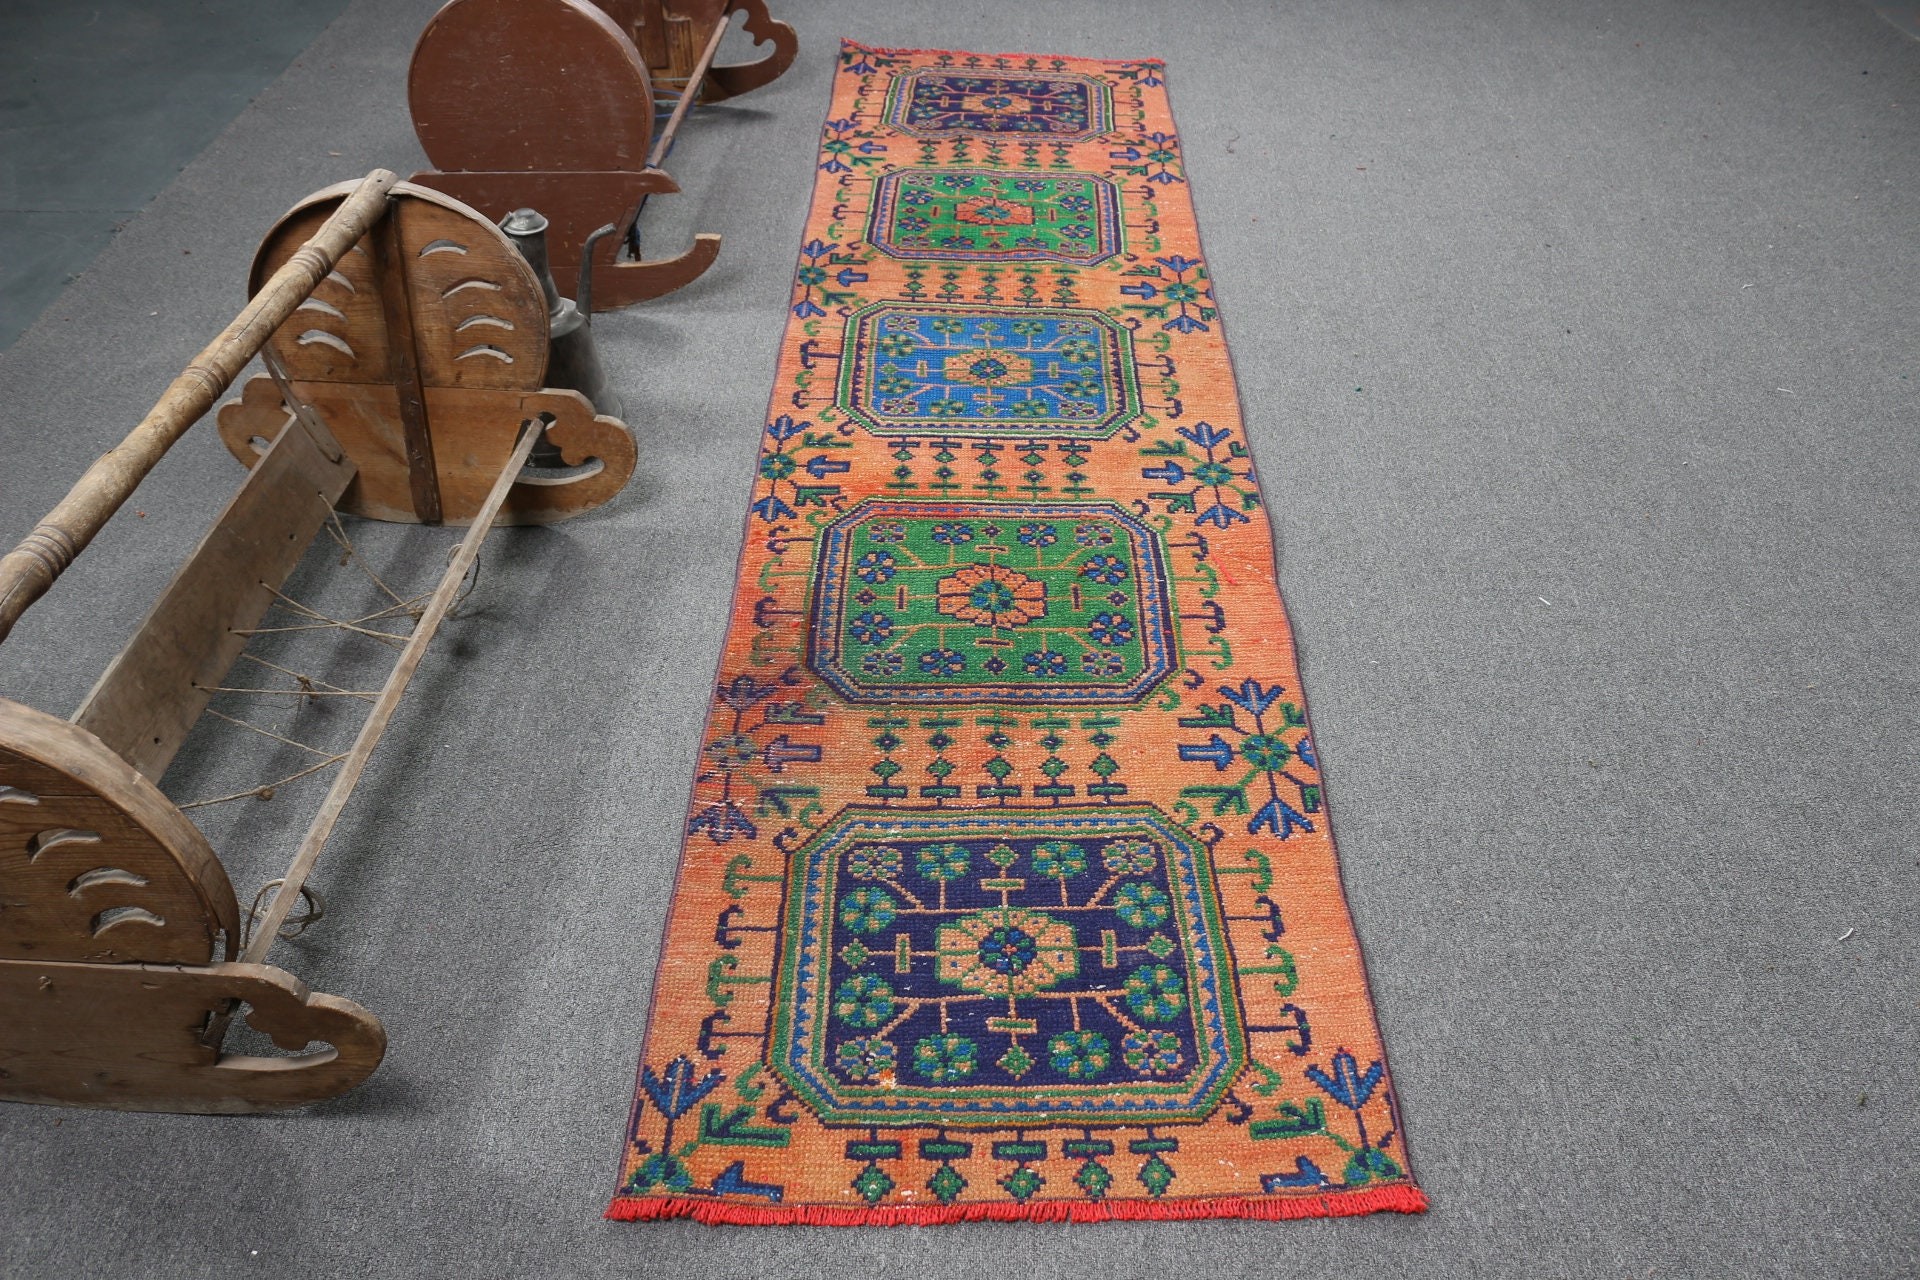 Moroccan Rug, Turkish Rug, Vintage Rug, Red Antique Rug, Rugs for Stair, 2.4x9.4 ft Runner Rugs, Oriental Rug, Corridor Rug, Stair Rug